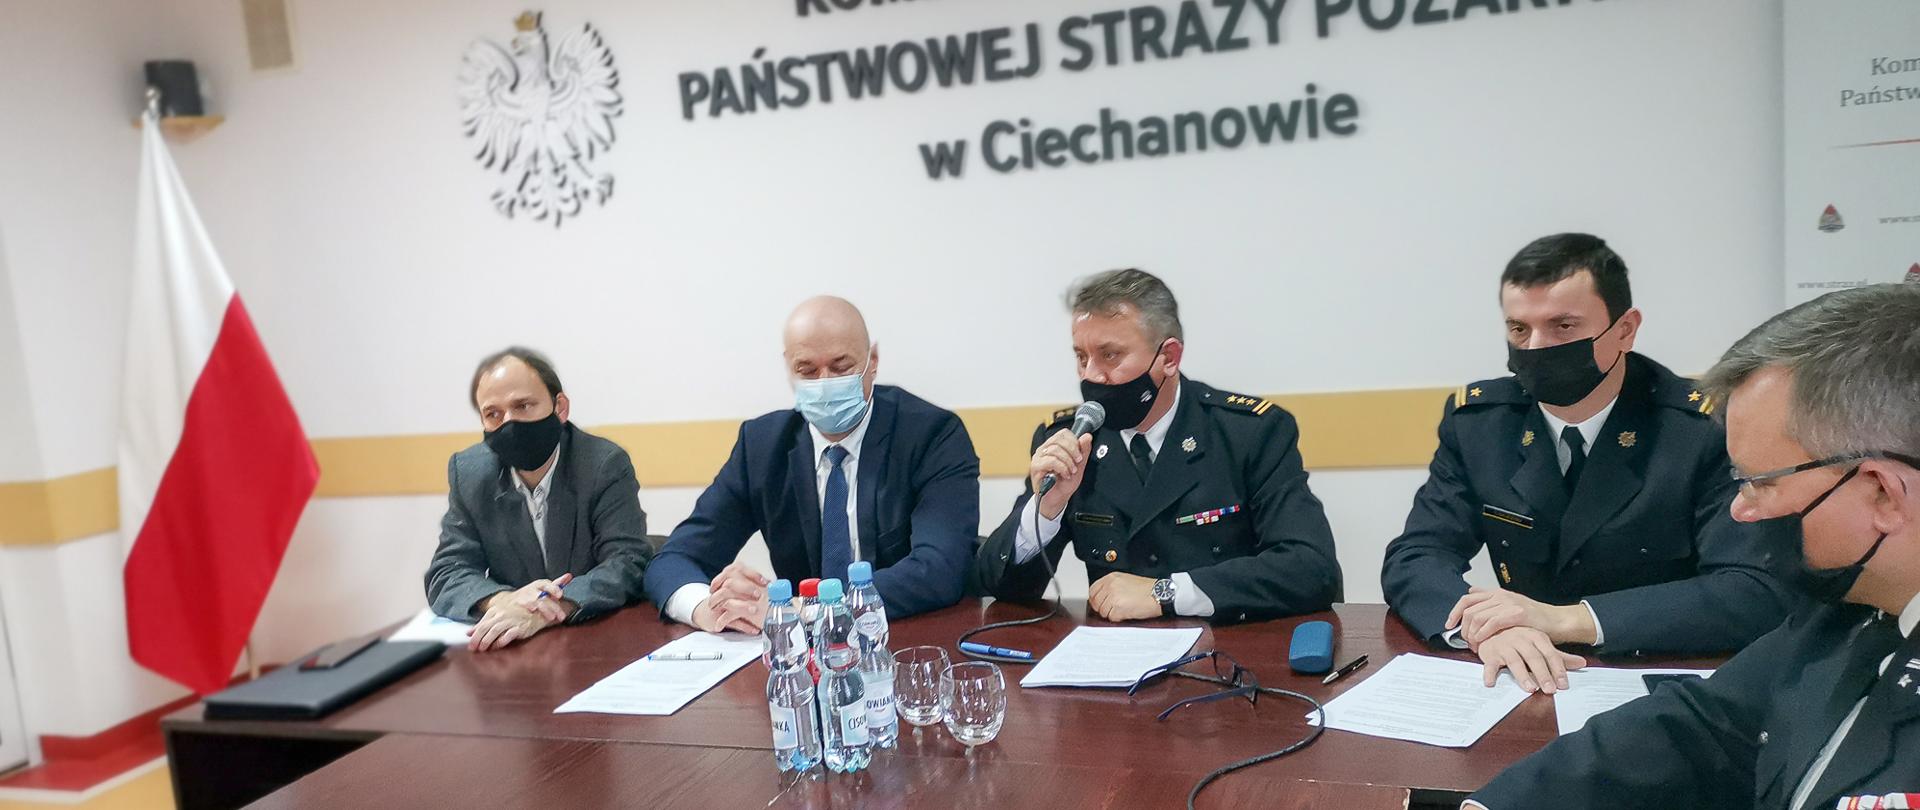 Zdjęcie przedstawia pięć osób na spotkaniu roboczym dotyczącym szczepień przeciwko COVID-19. Strażak w środku trzyma mikrofon i przemawia. W tle godło RP na ścianie. Po lewej stronie zdjęcia stoi flaga Polski.